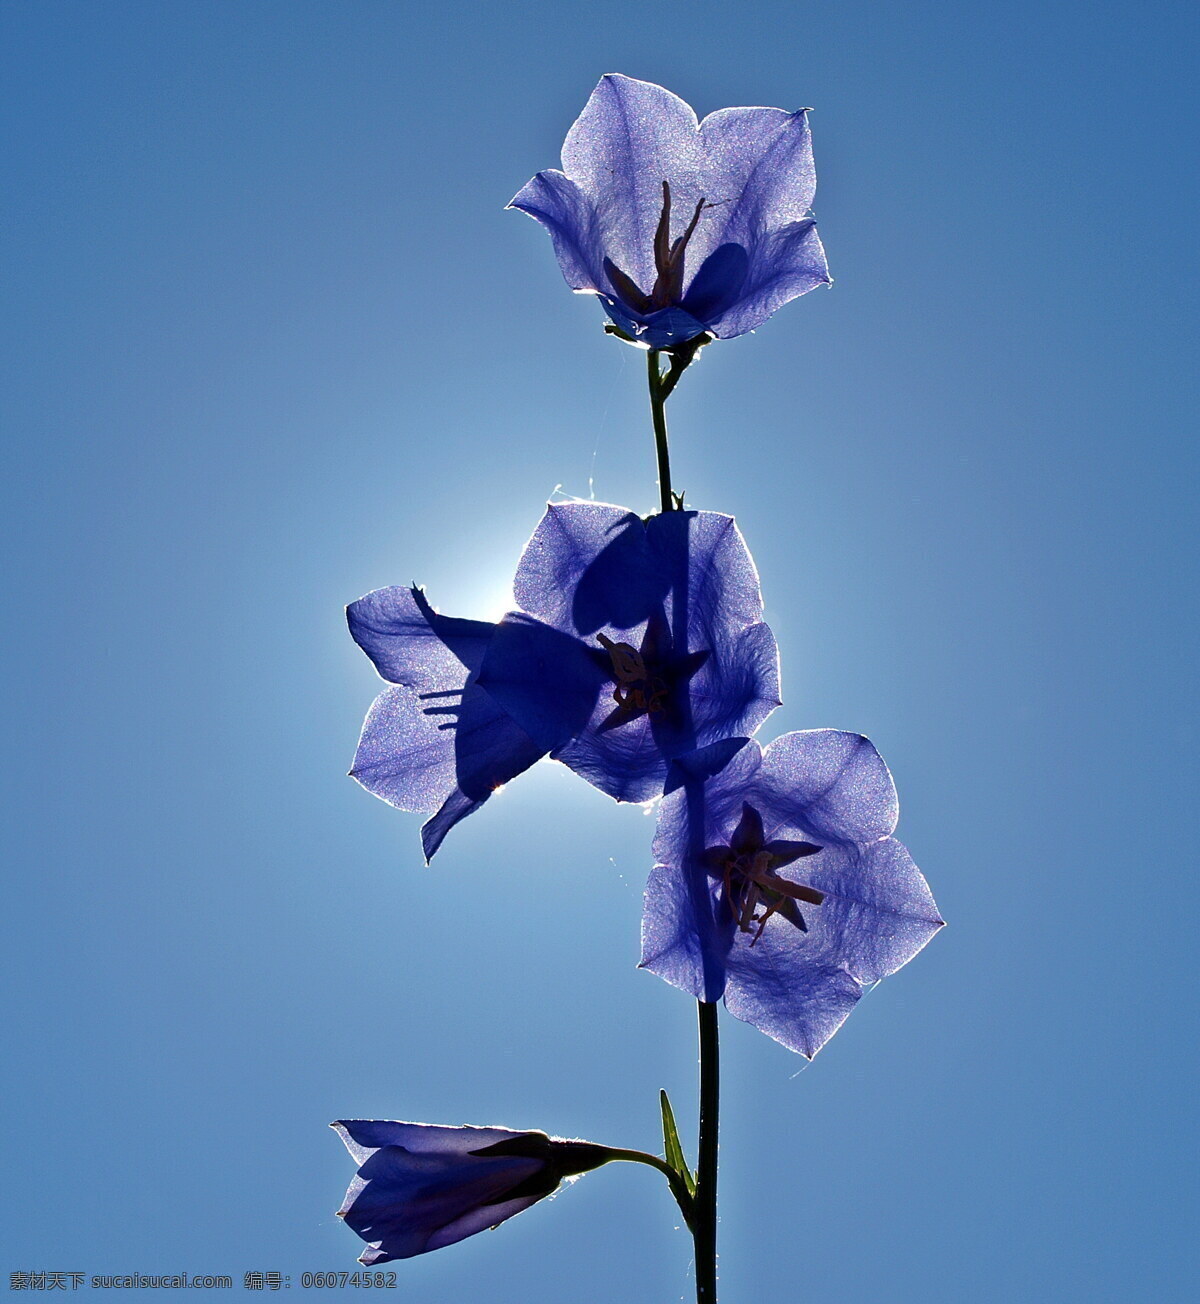 蓝色 桔梗 花 高清 桔梗花 蓝色桔梗 蓝花 蓝色花朵